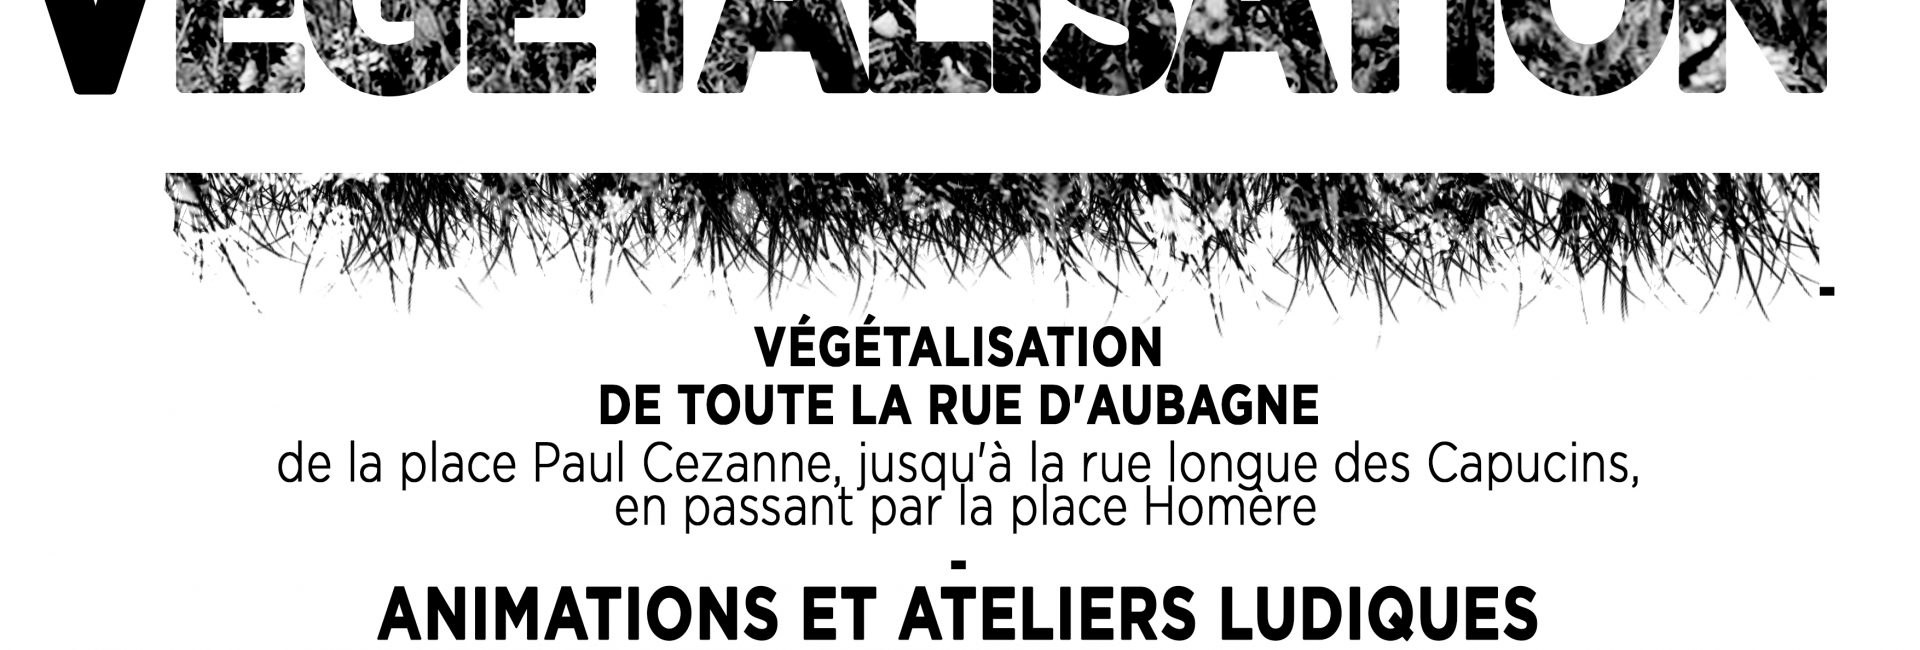 Végétalisation de la rue d'Aubagne le 26 avril 2015